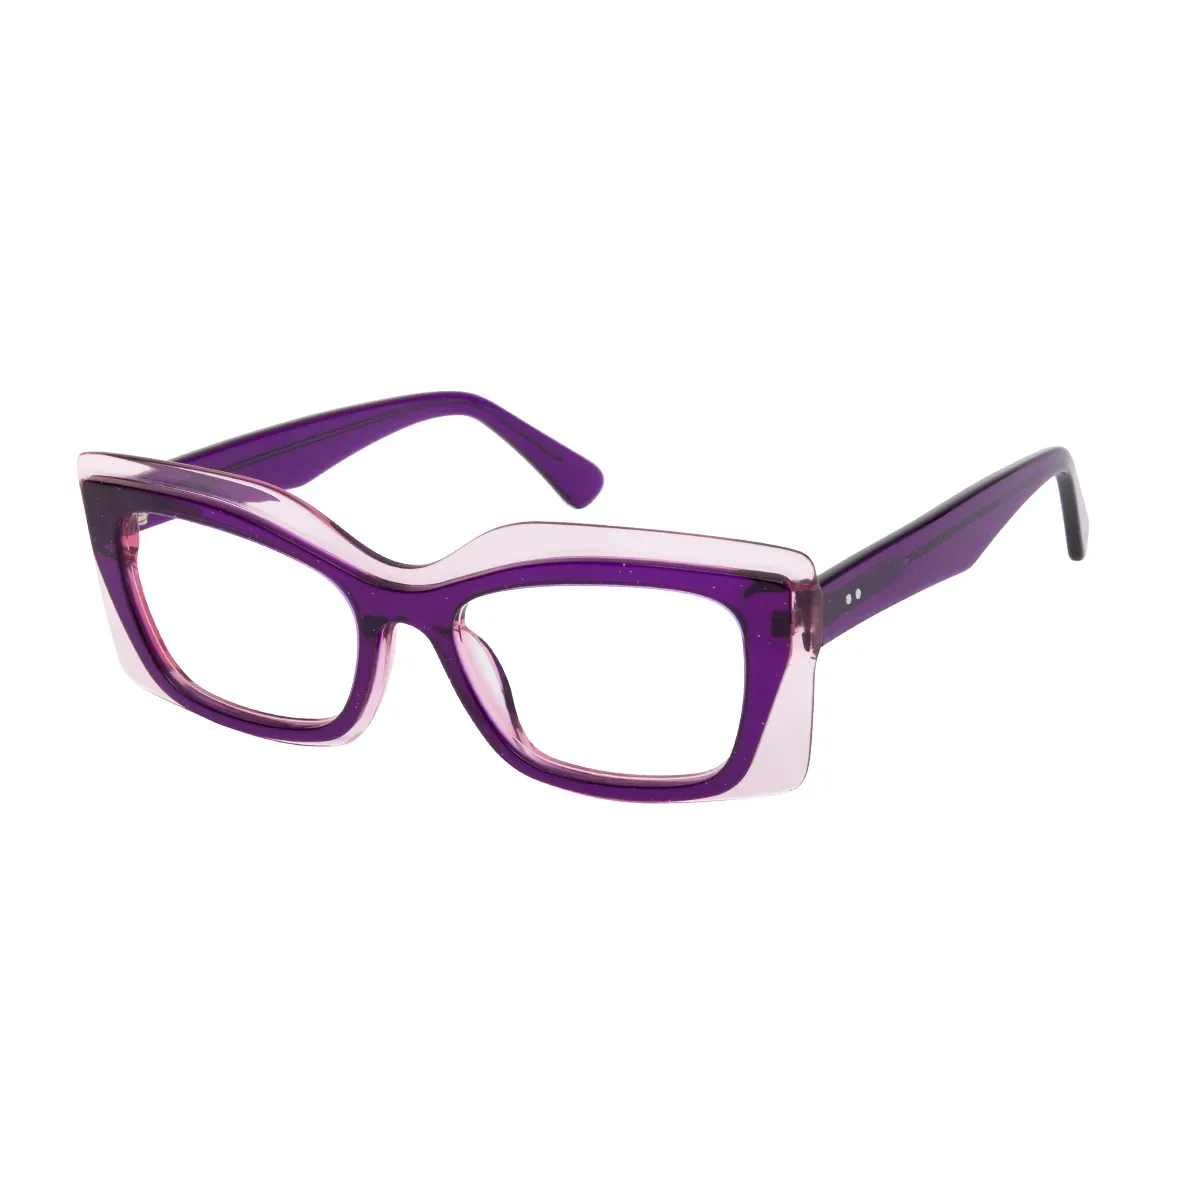 Lincoln - Square Purple Glasses for Women